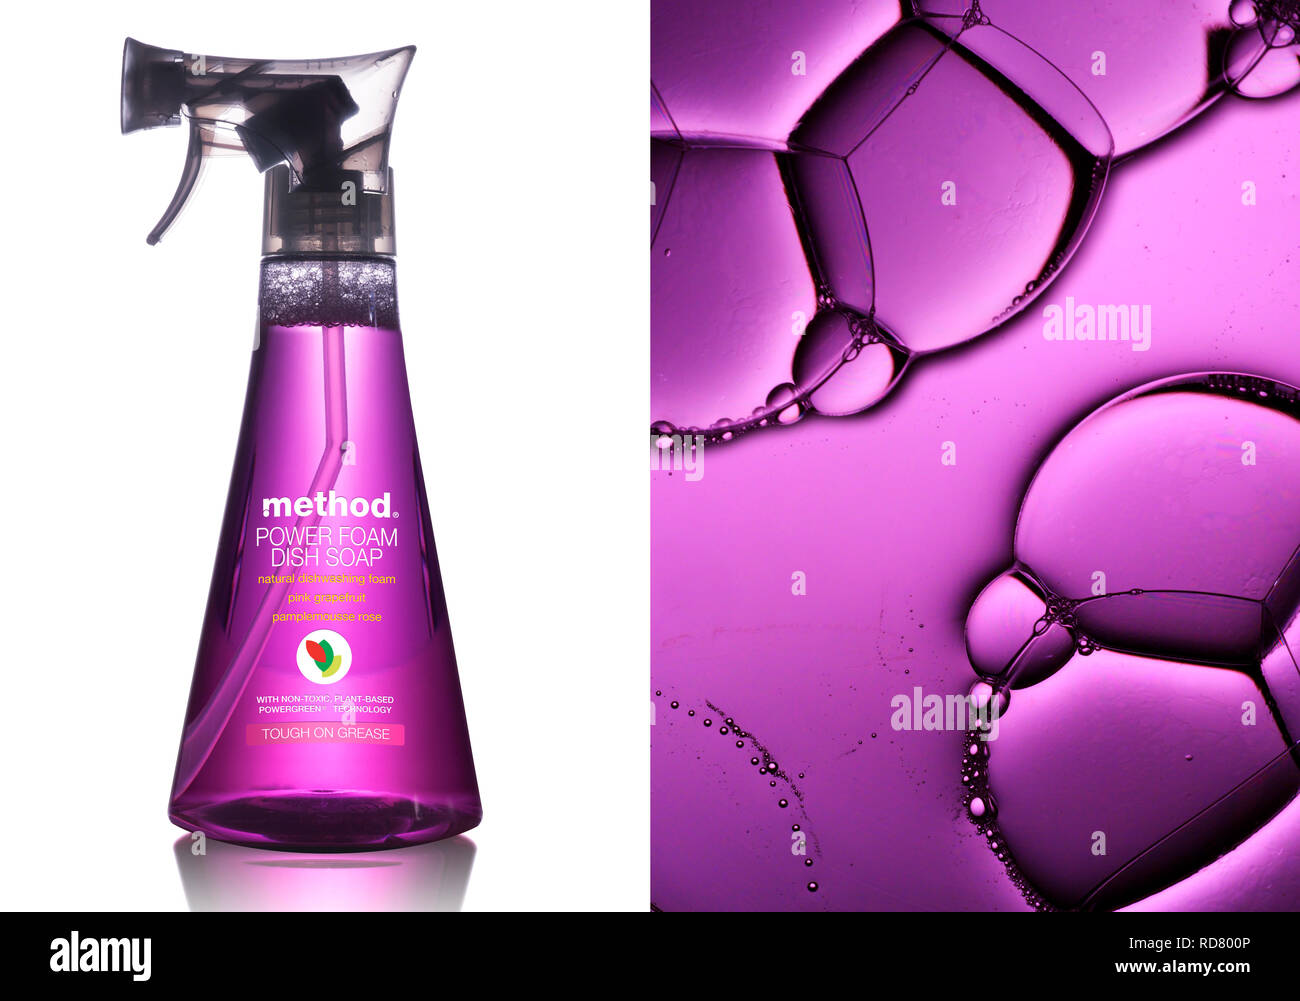 Imagen dividida botella de detergente y burbujas, Foto de estudio Foto de stock